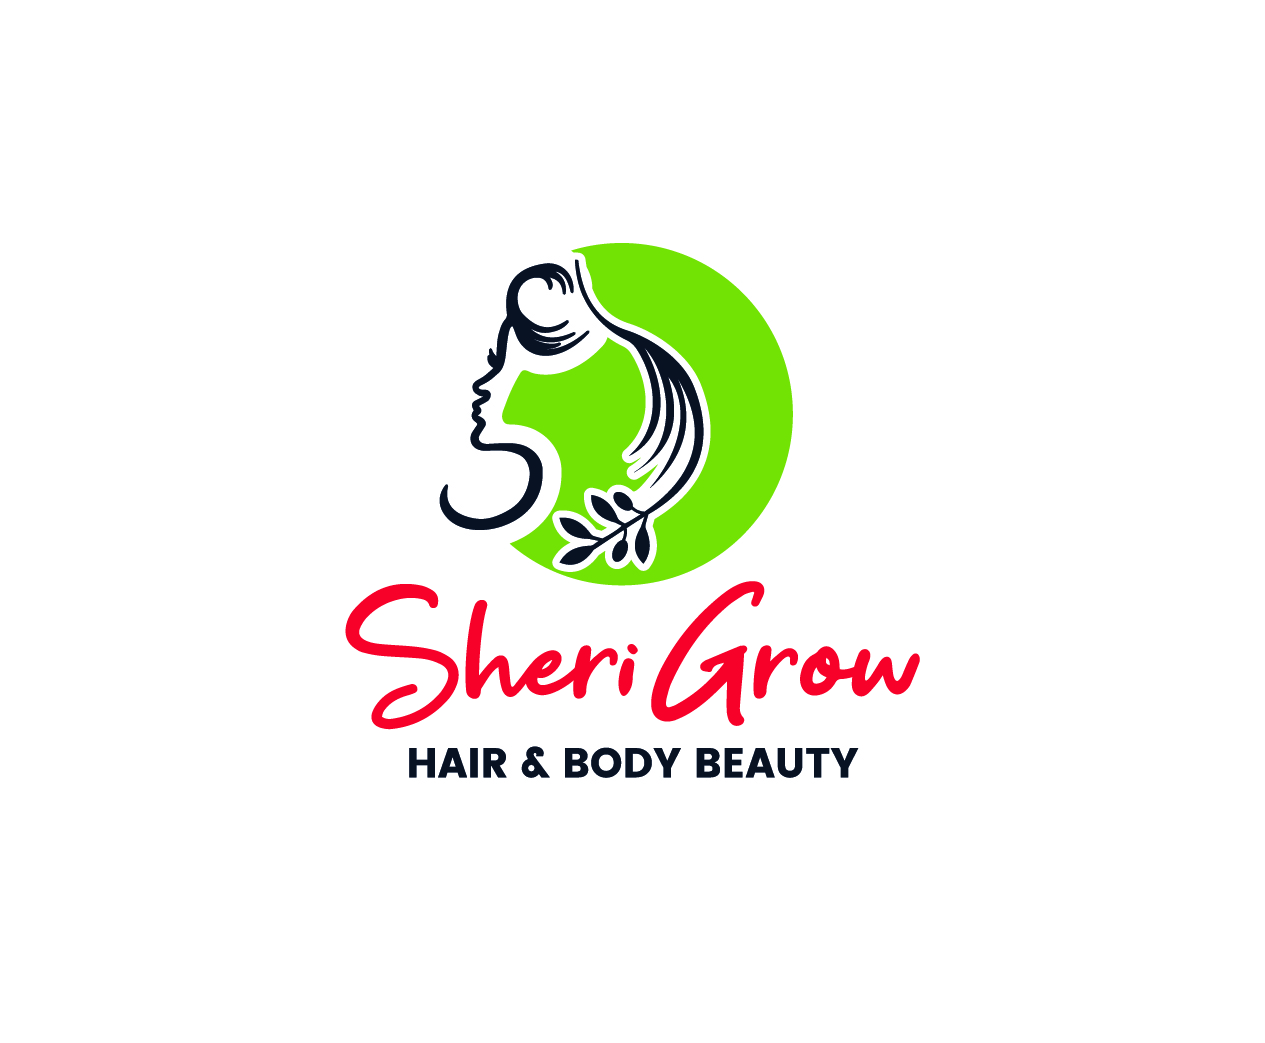 Sherigrow logo